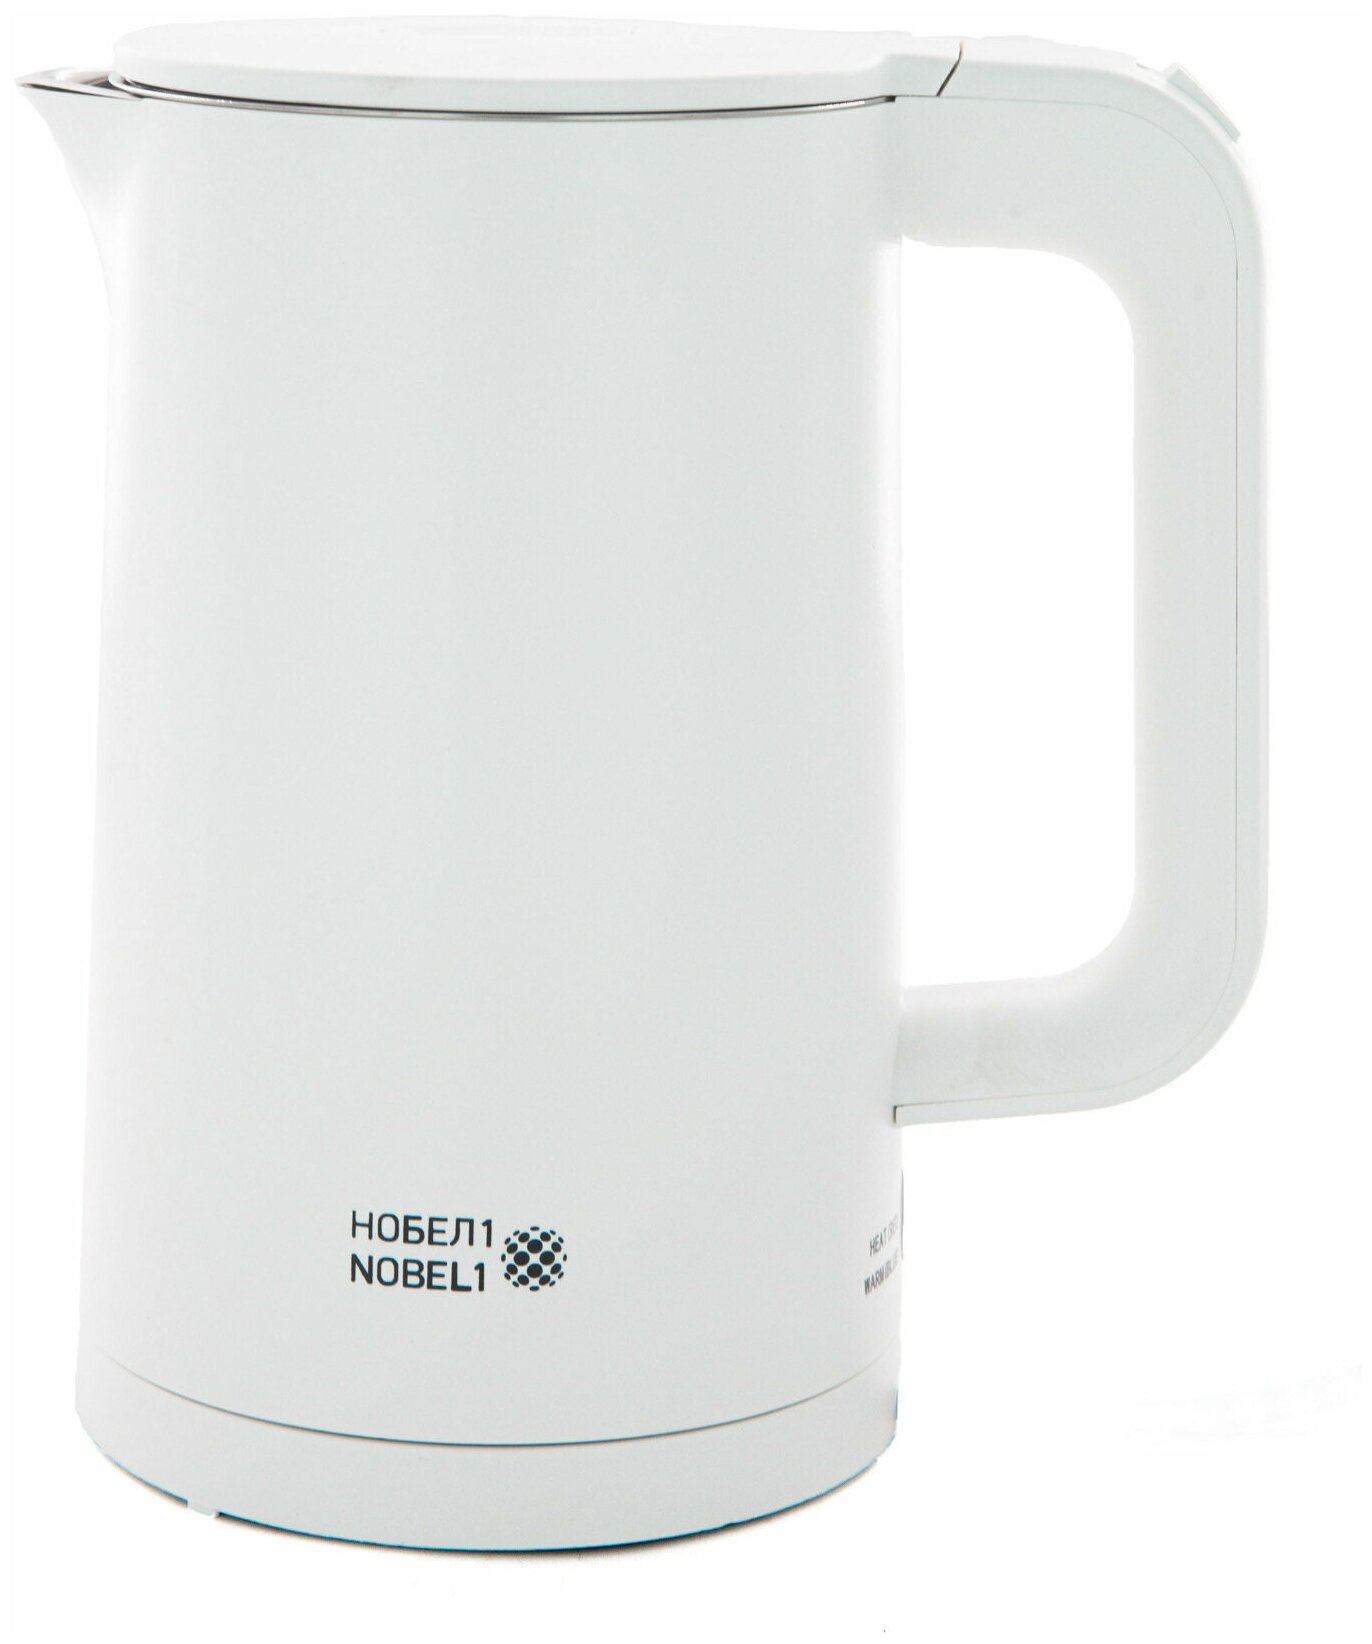 Электрический Чайник NOBEL1 6018, 1500W, 1.8 L , белый